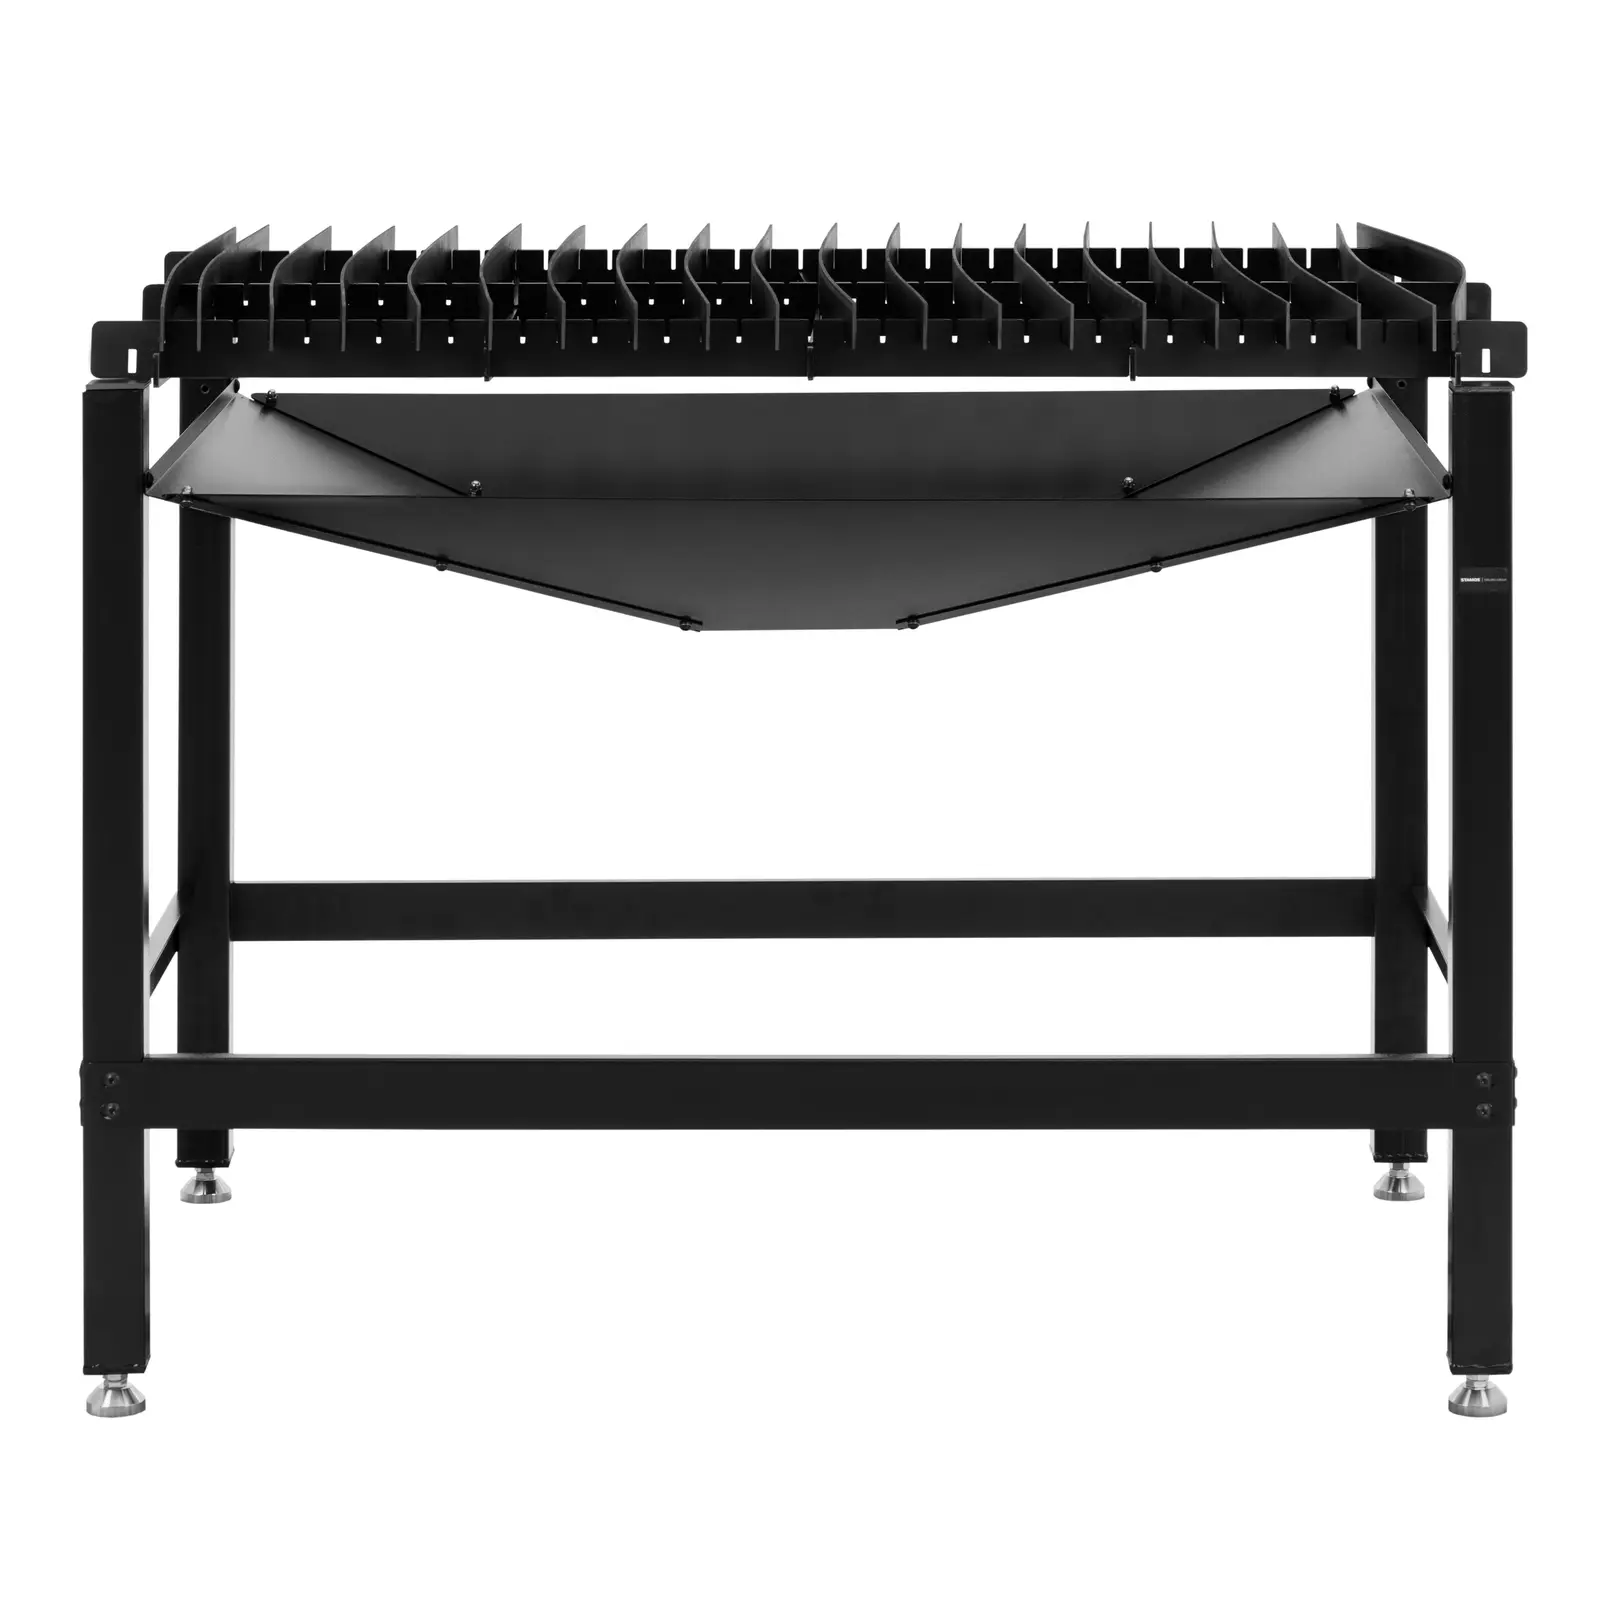 Τραπέζι κοπής πλάσματος - 120 x 80 cm - 150 kg